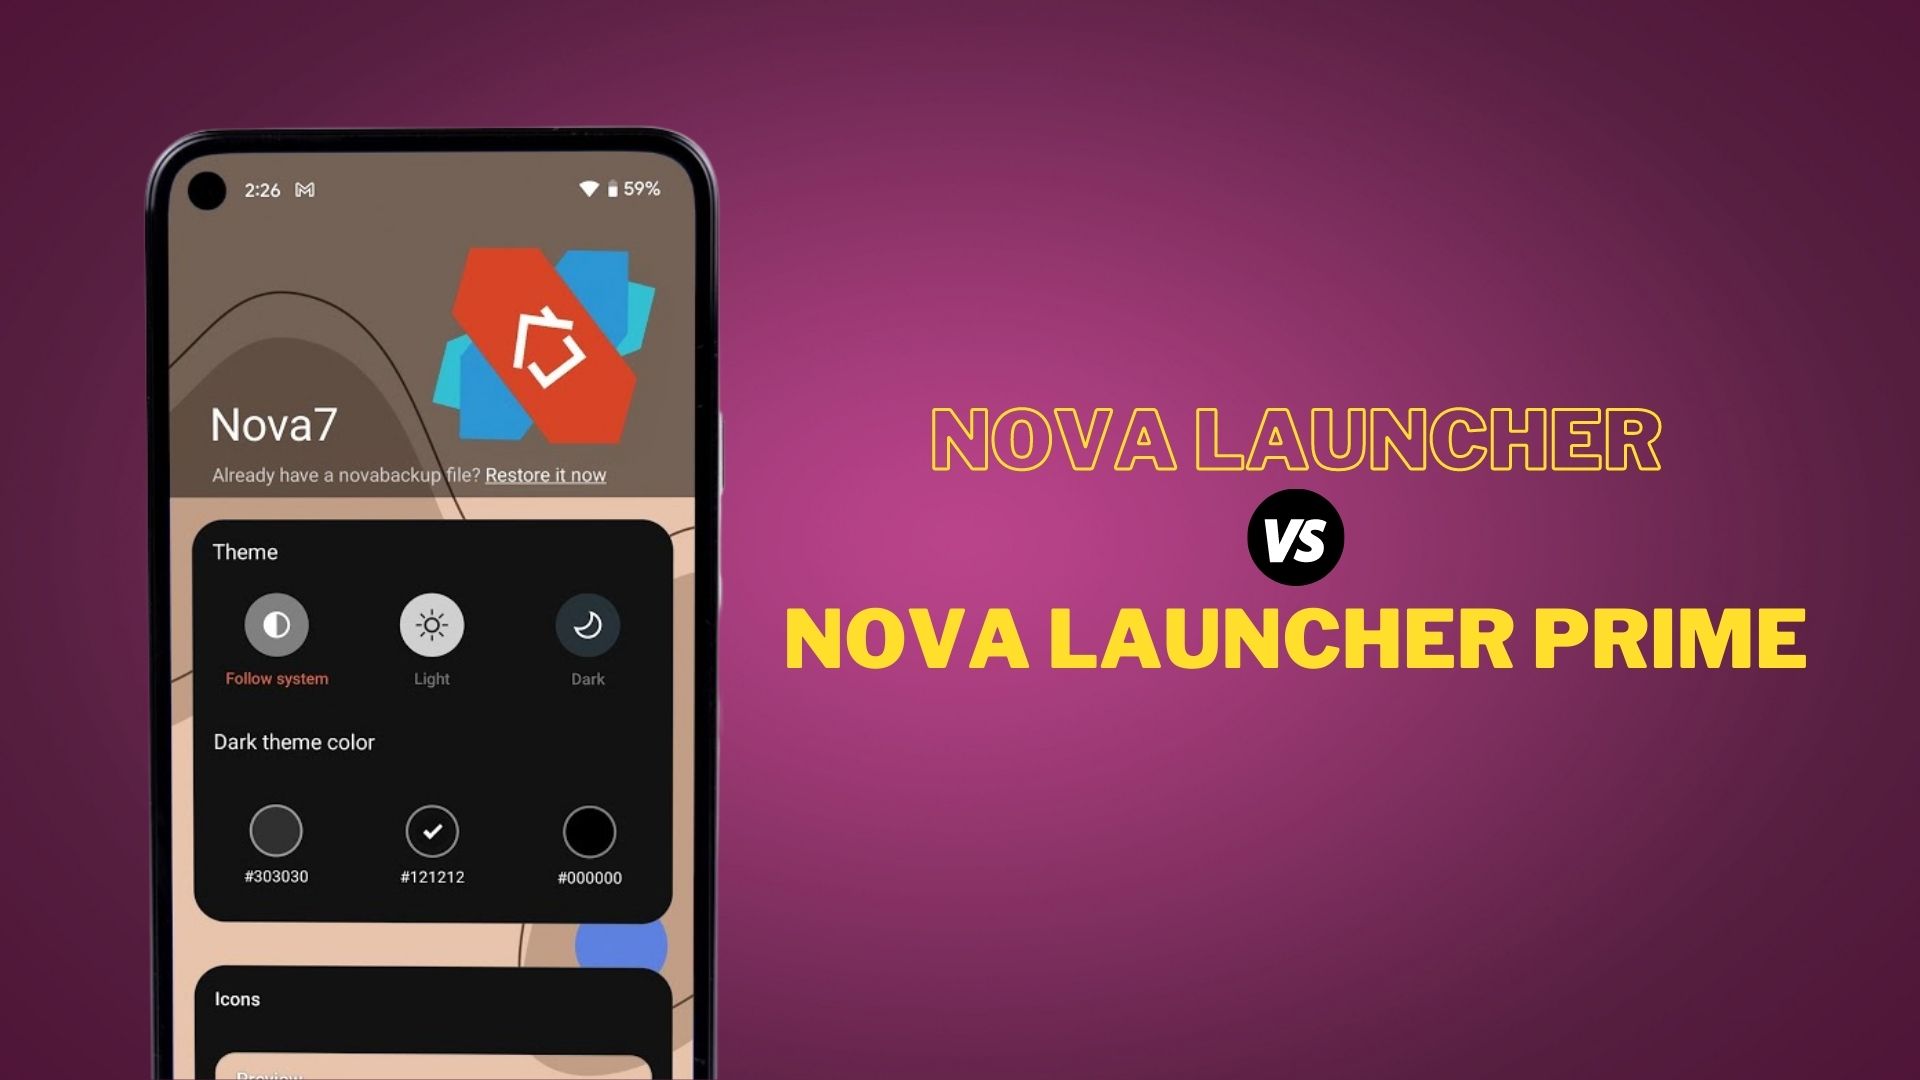 Nova Launcher Prime vs Nova Launcher